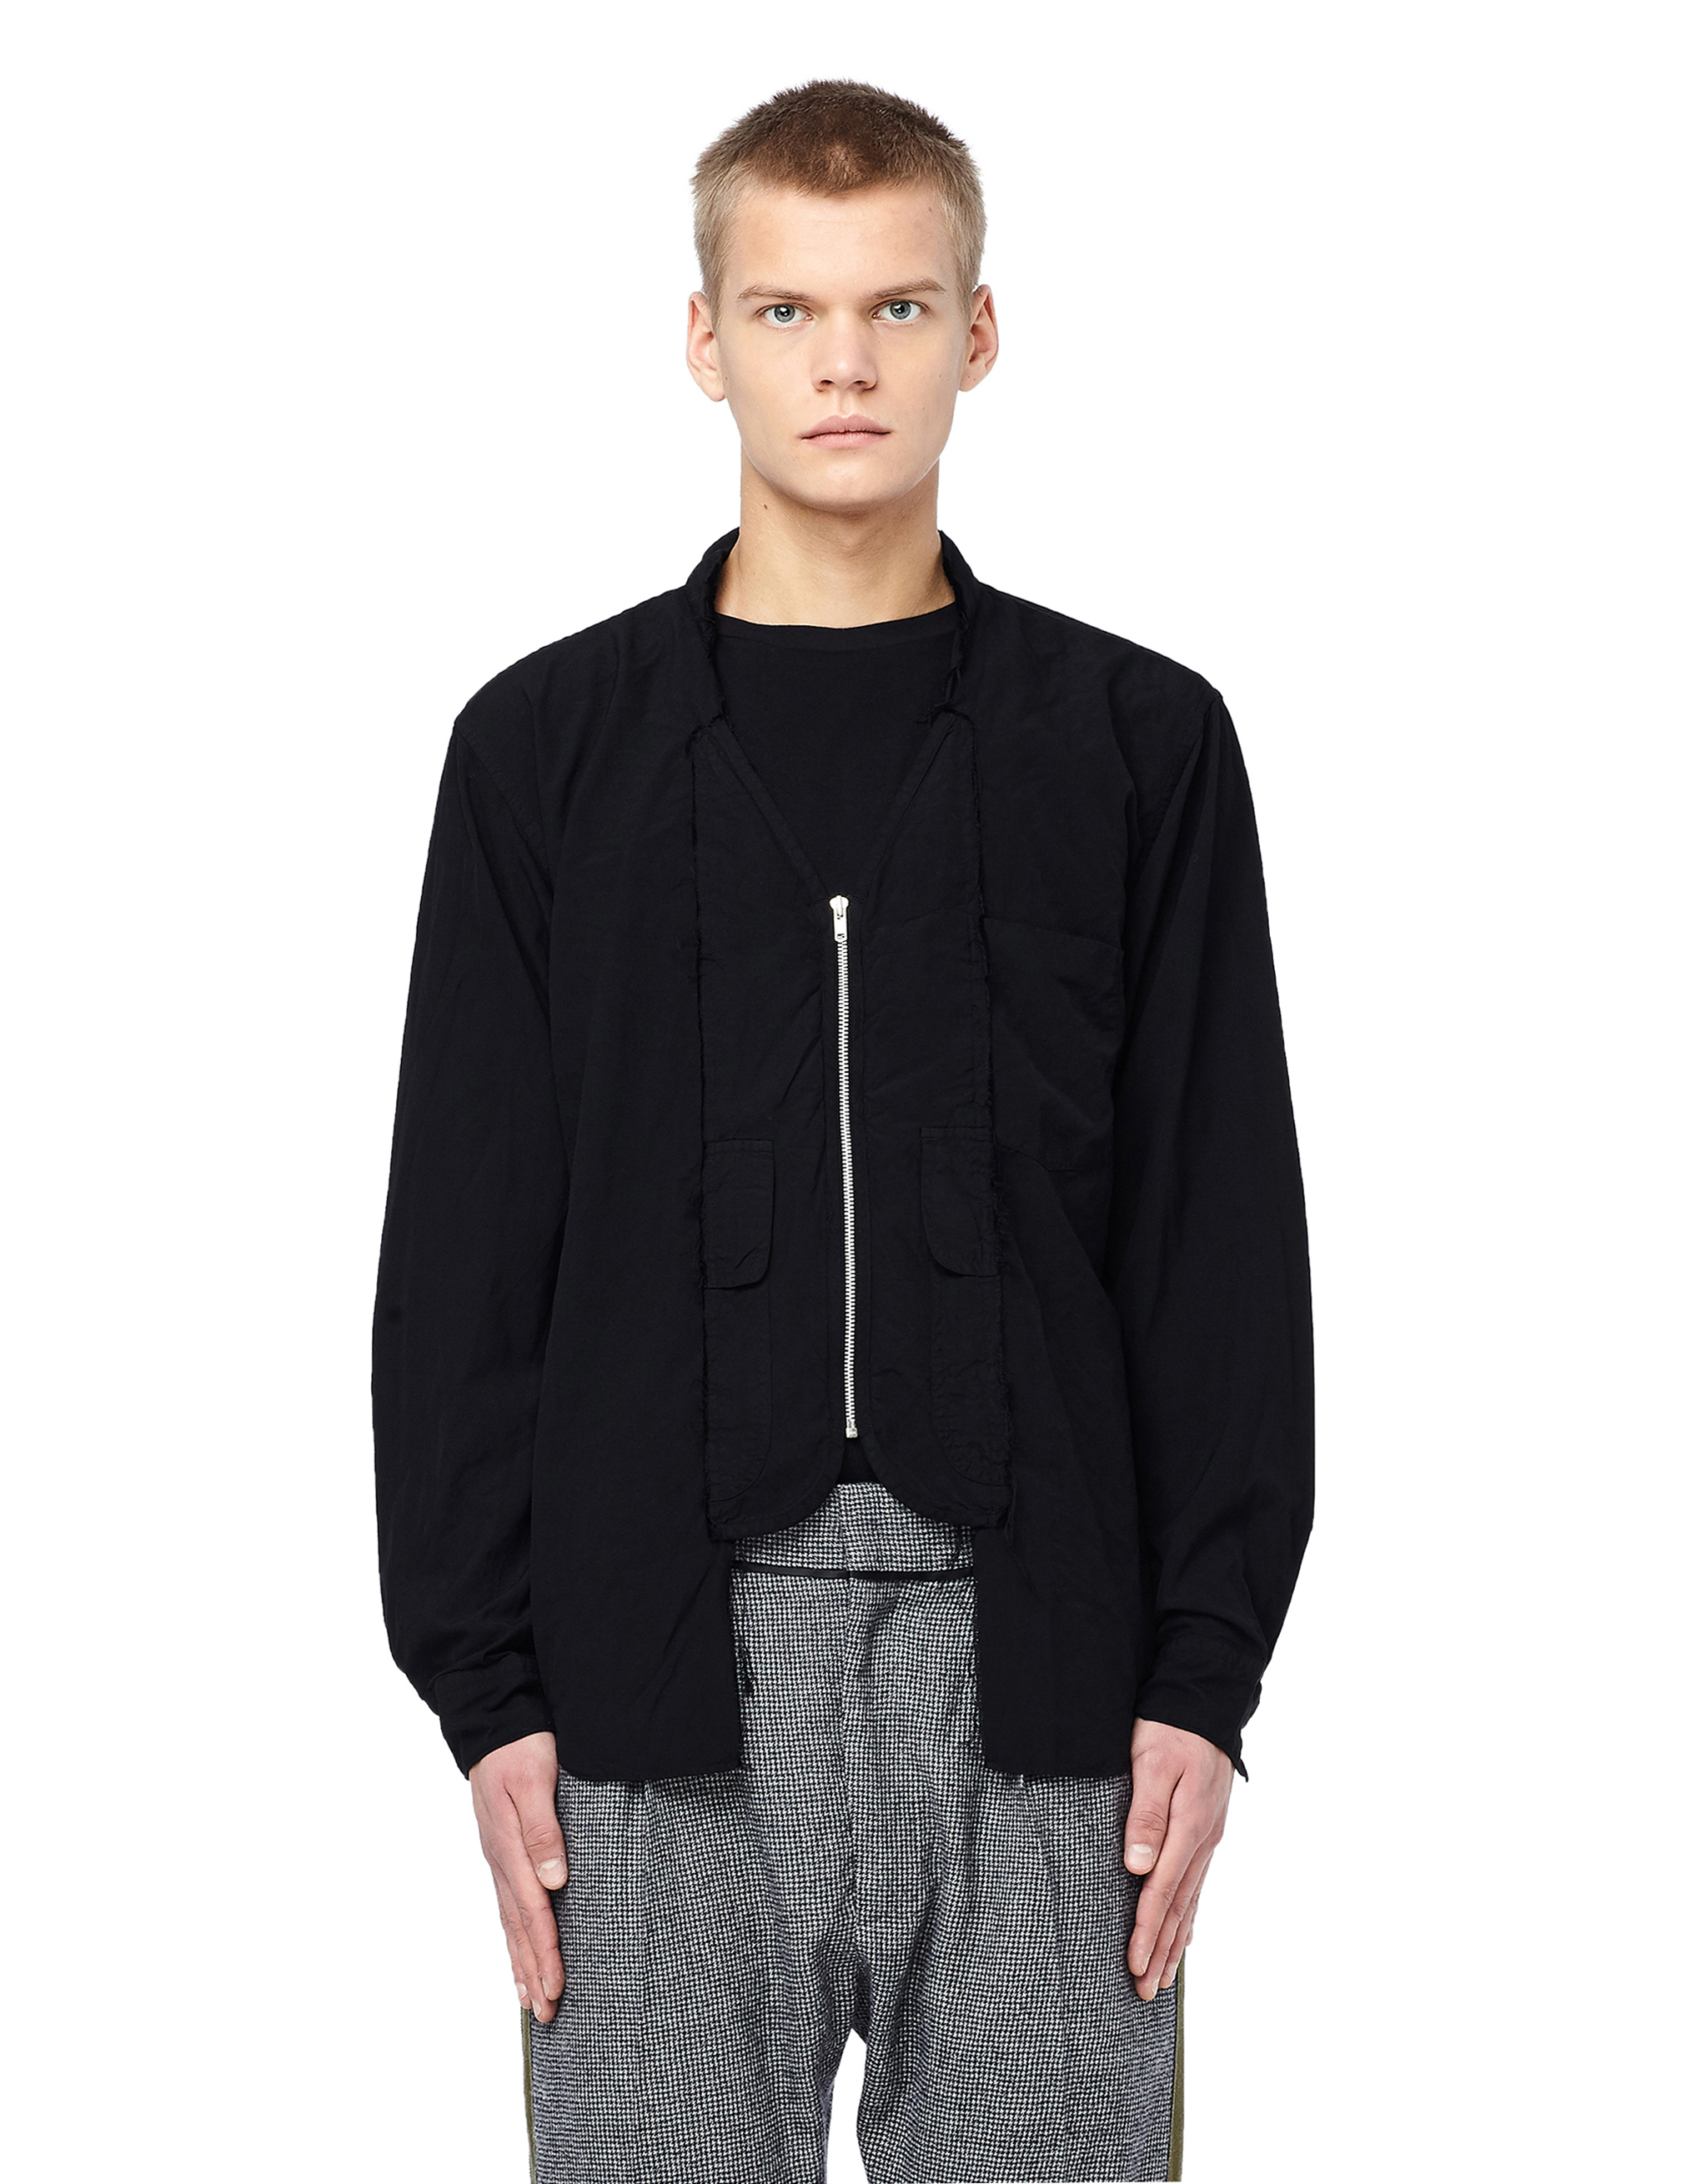 Buy Comme des Garcons Homme plus men black zip-up shirt for $273 online ...